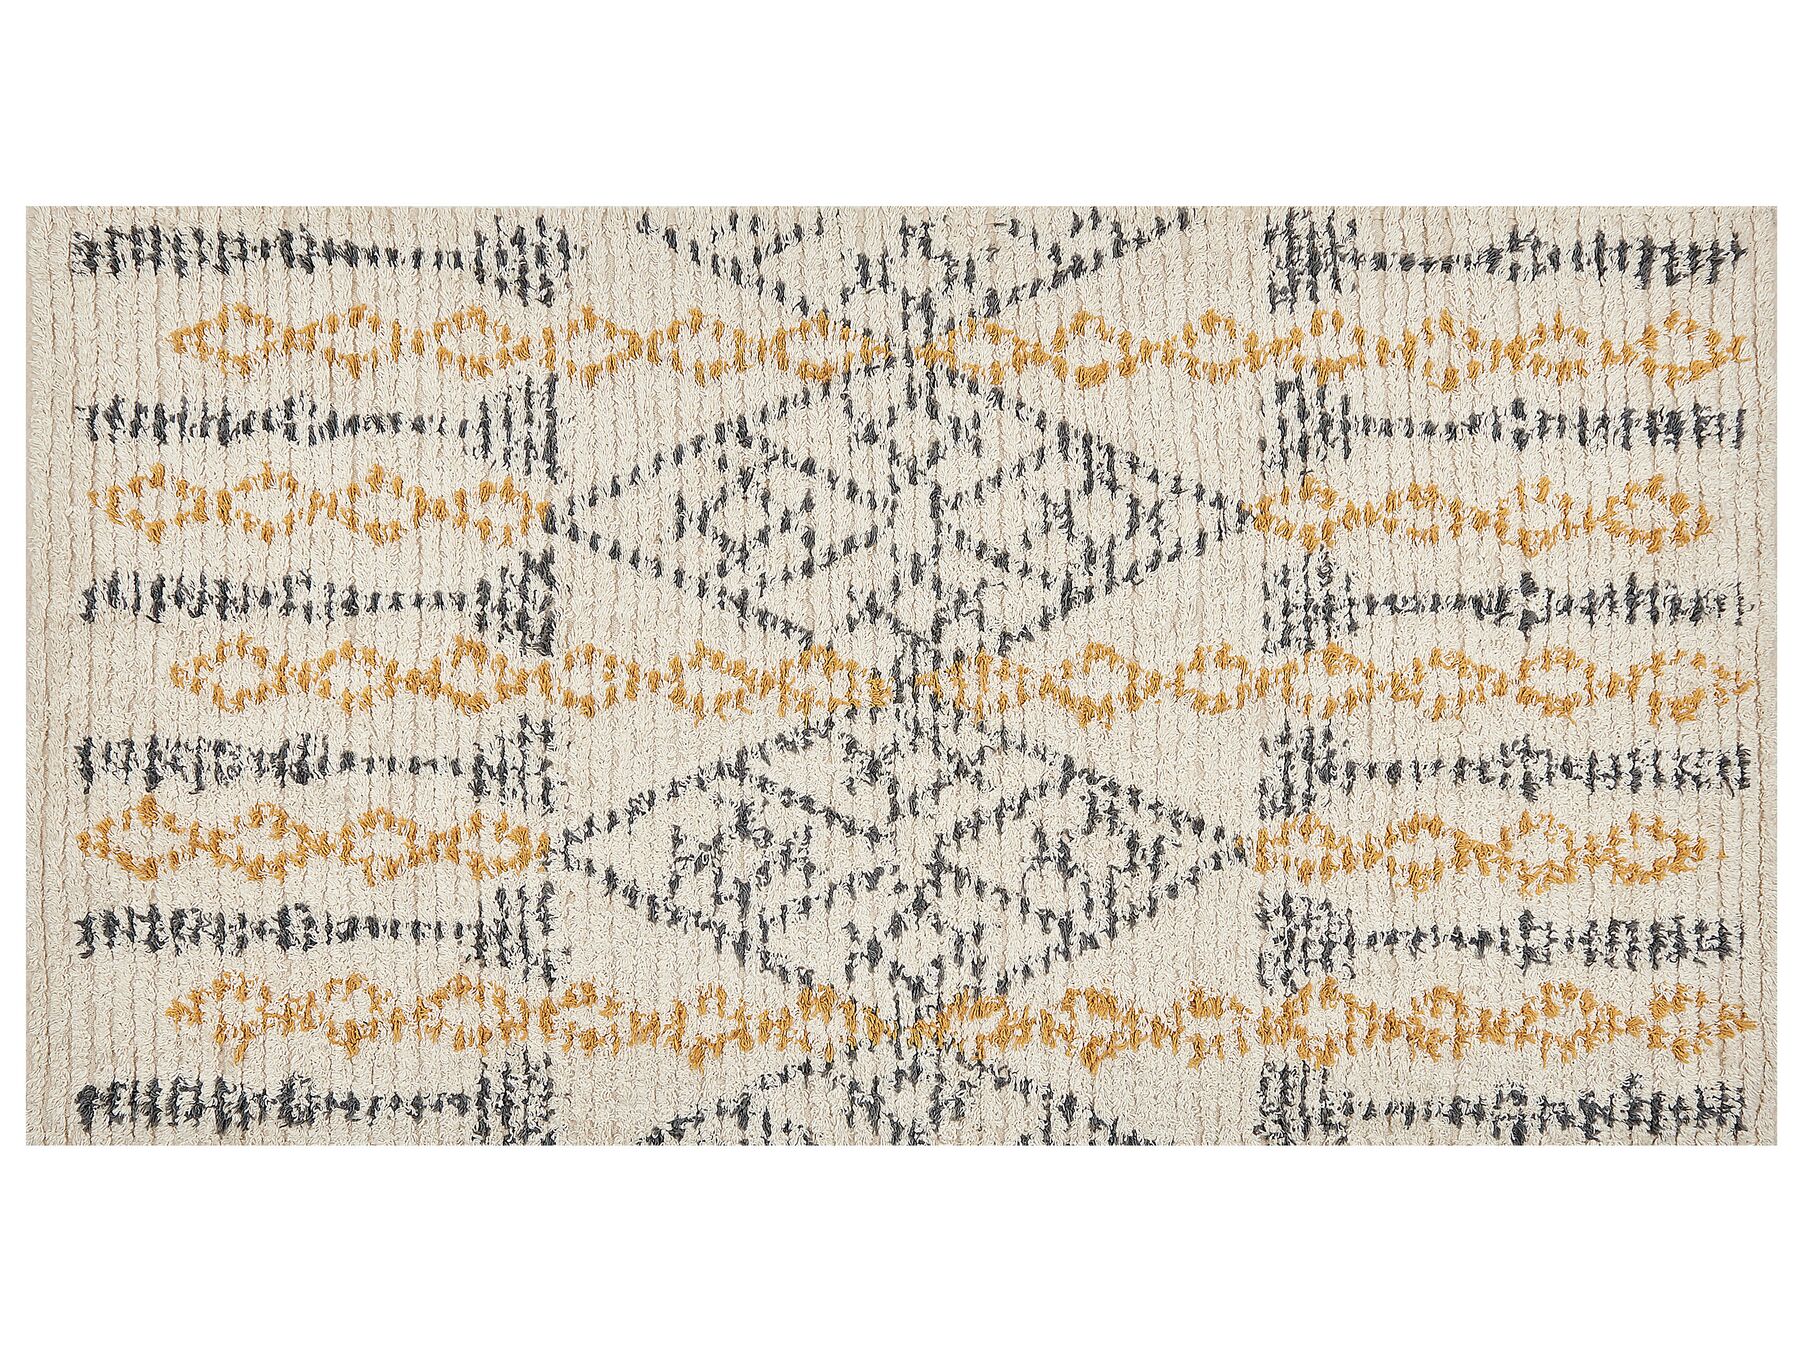 Teppich Baumwolle beige / gelb 80 x 150 cm geometrisches Muster KADAPA_839183